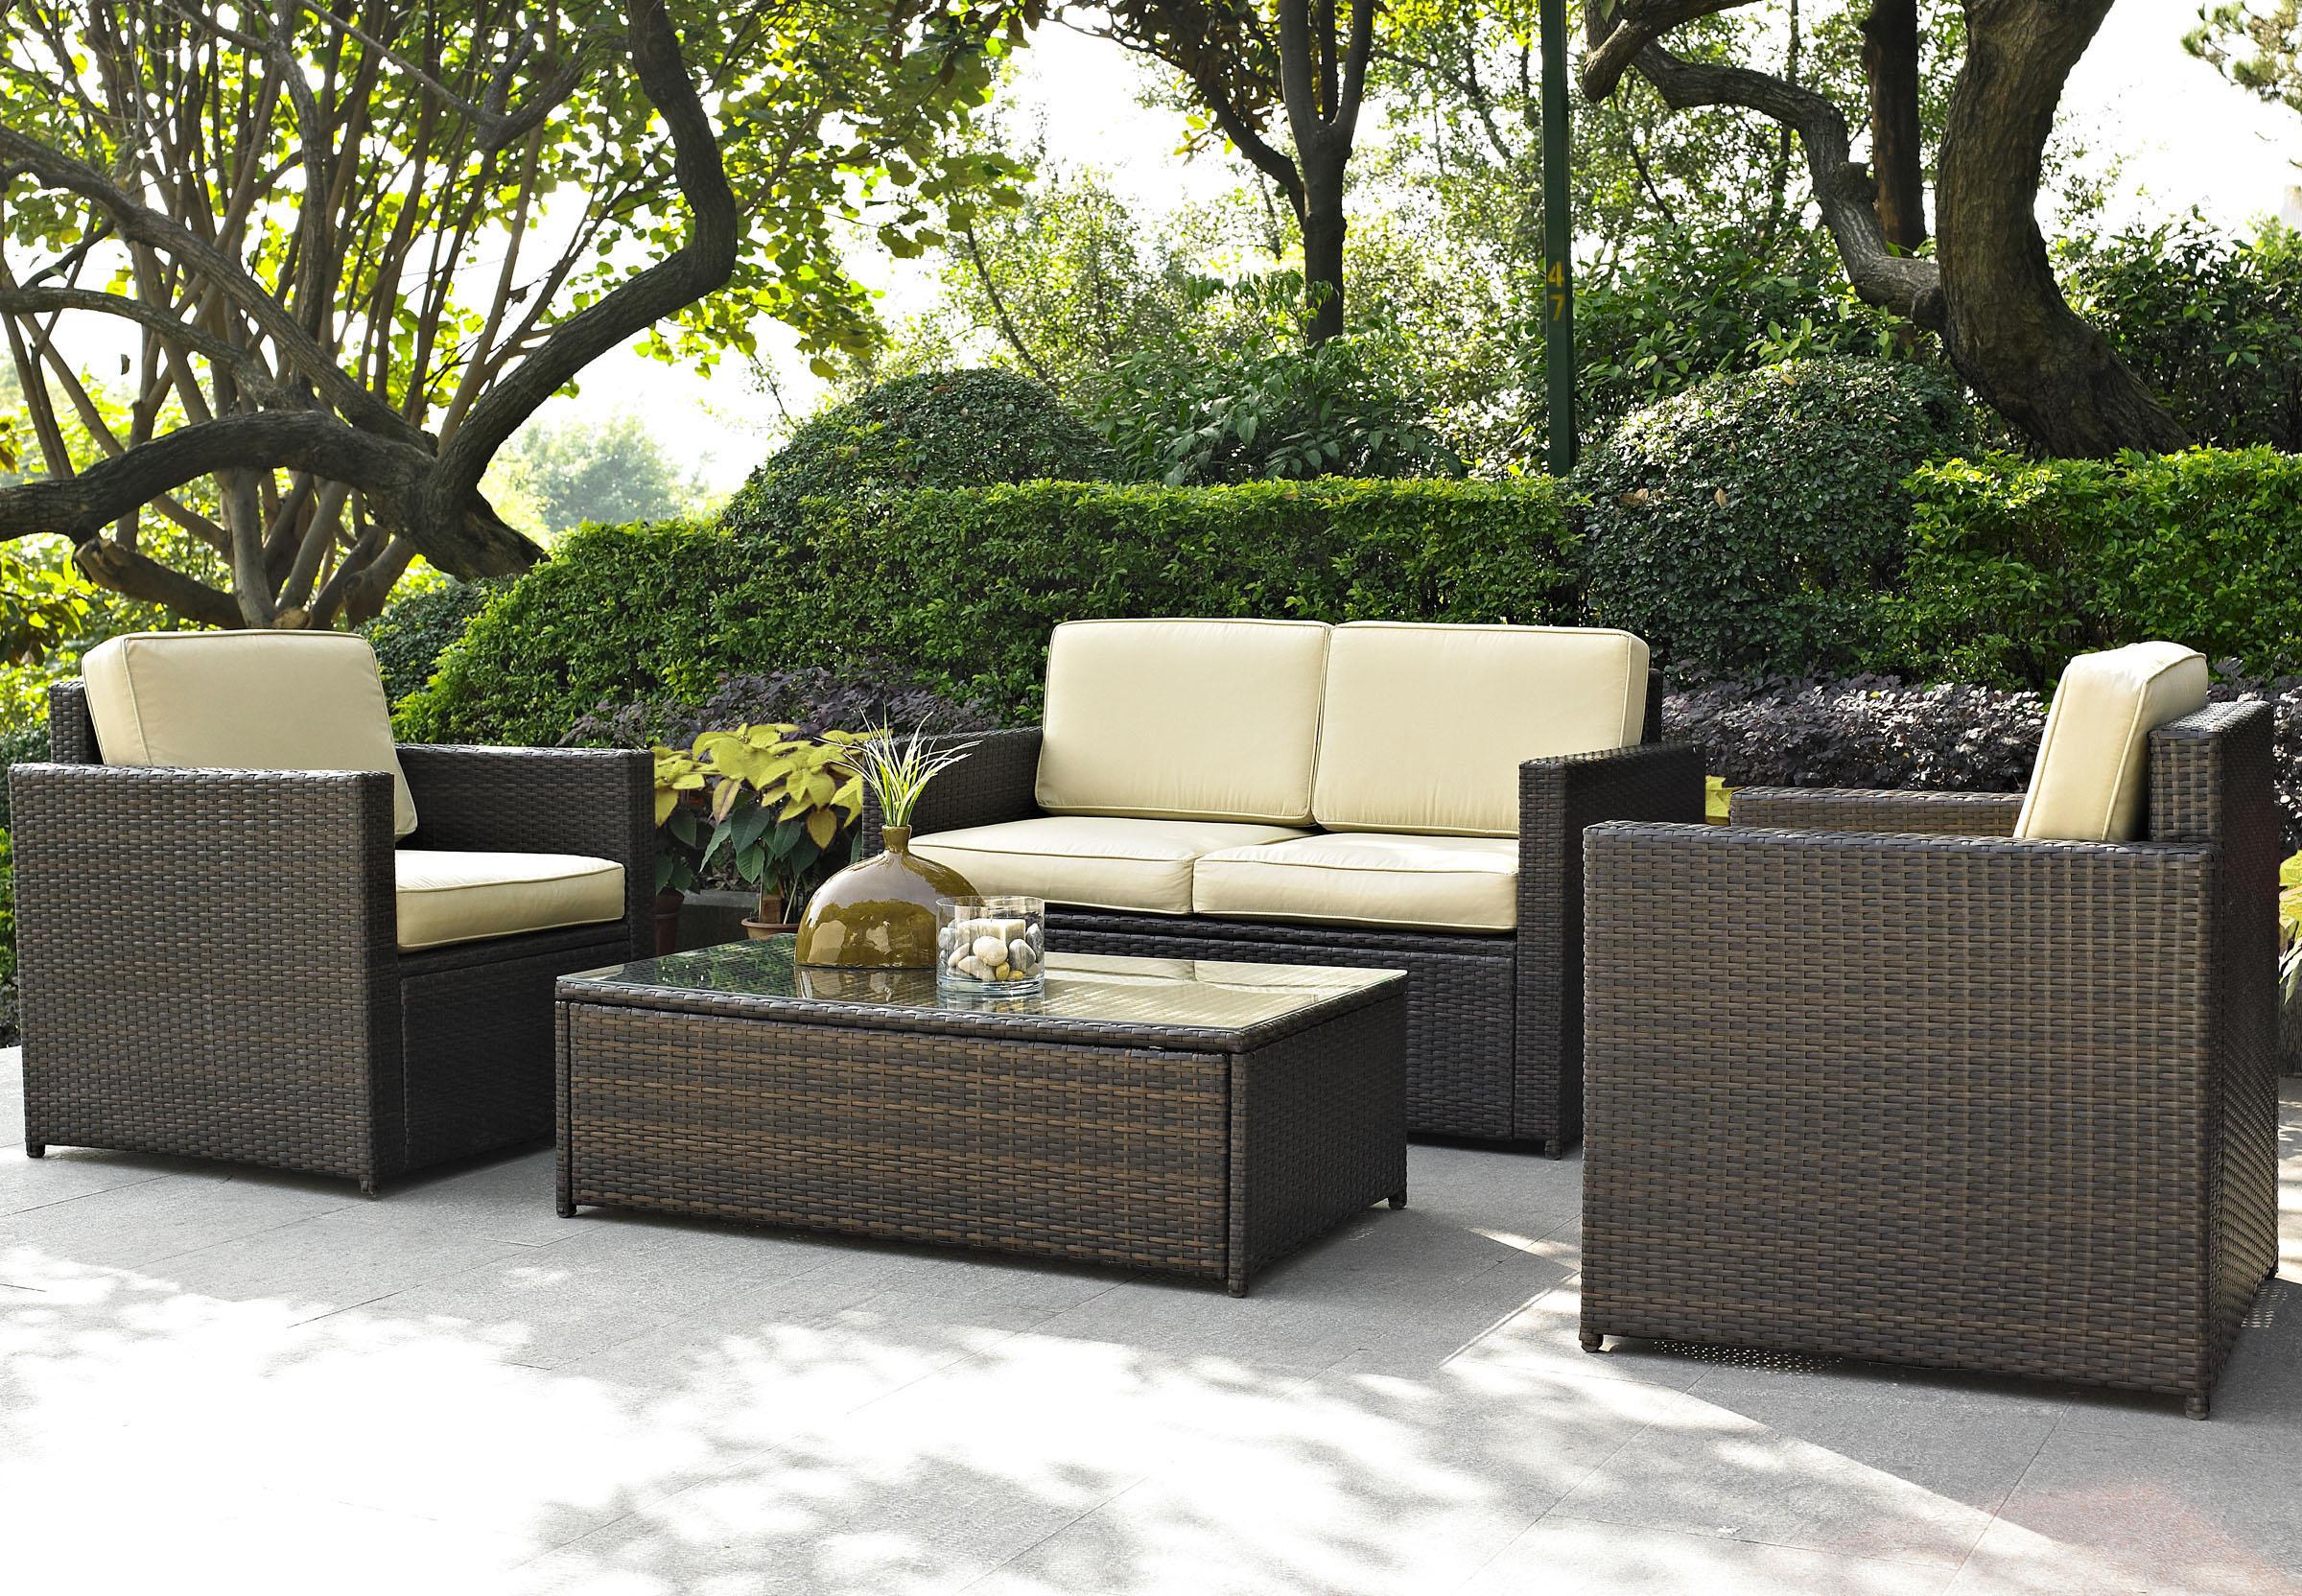 Outdoor Garden Furniture Designs